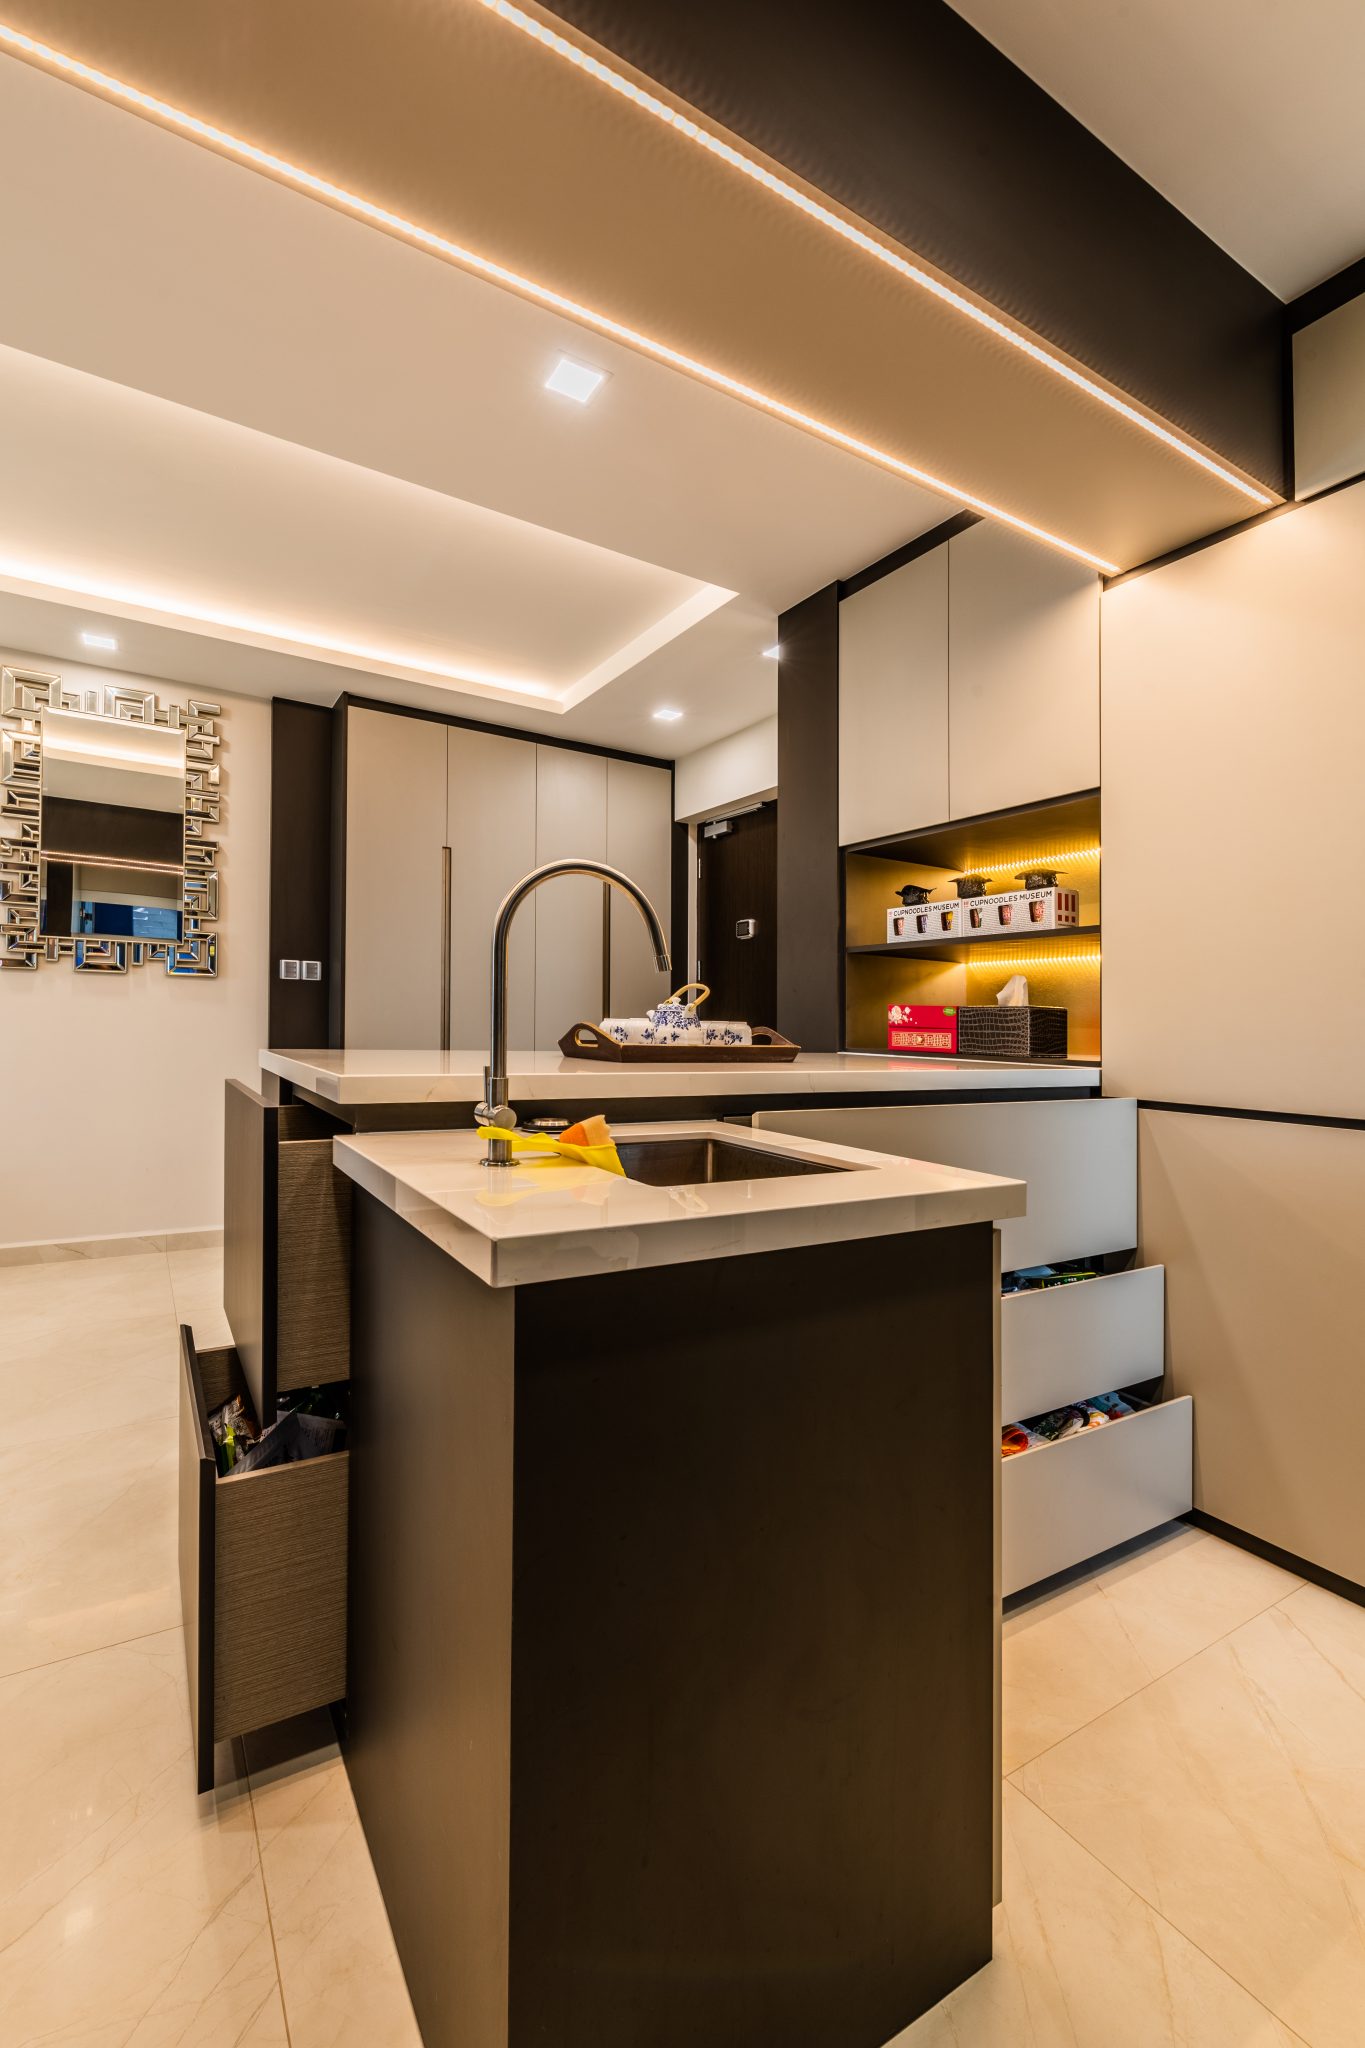 Small kitchen Design Ideas For 4 Room BTO - Exqsite Interior - Interior